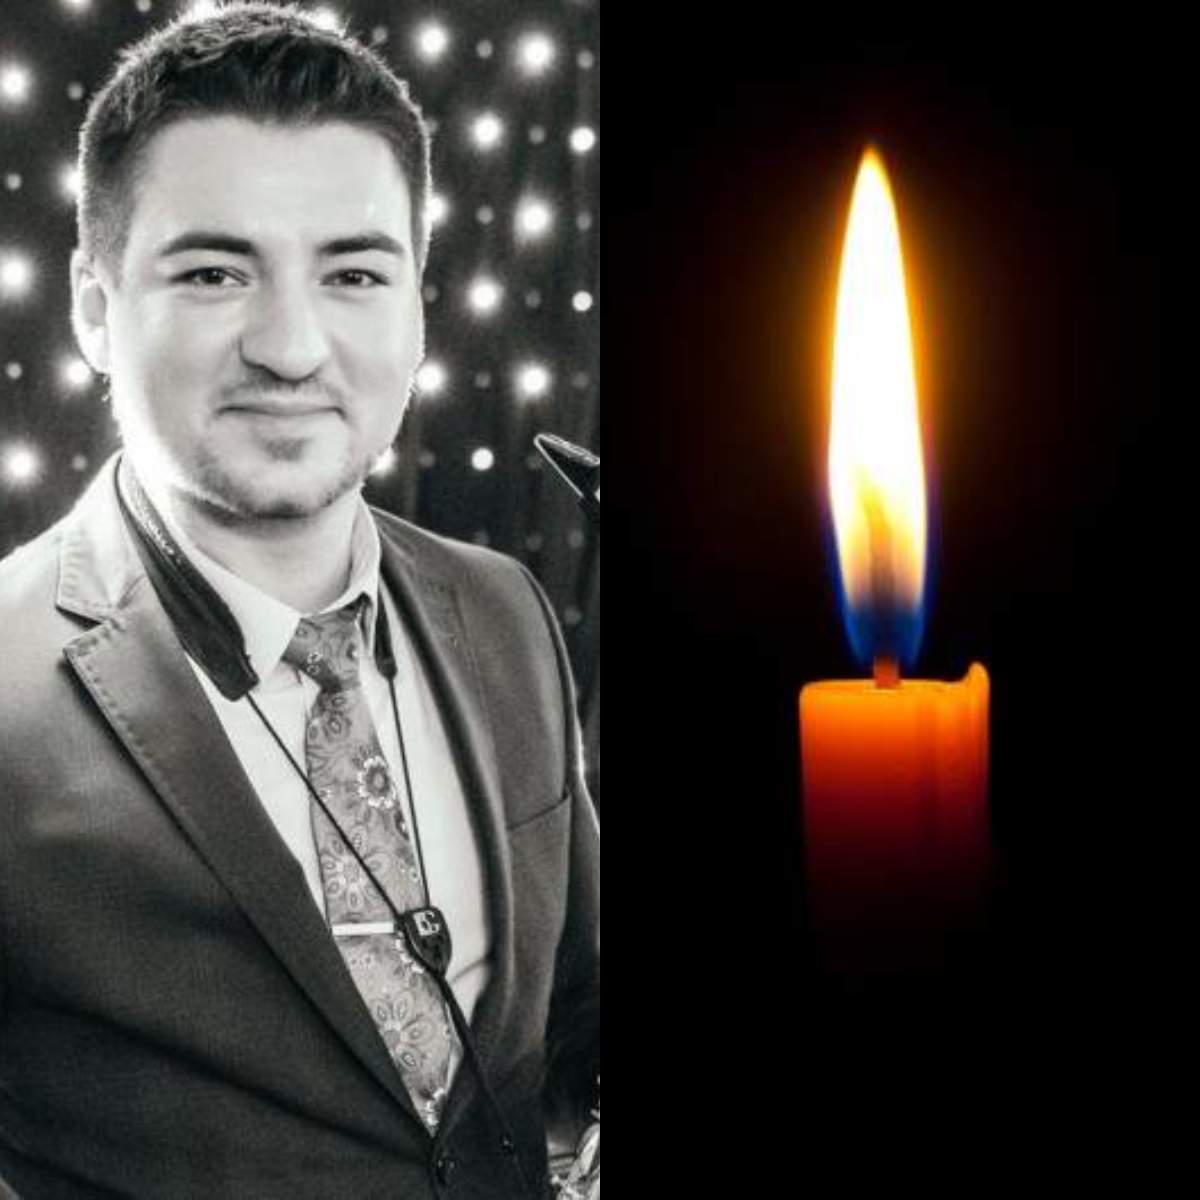 Tânăr saxofonist, mort într-un tragic accident. Era fiul unui patron de restaurant cunsocut în Moldova